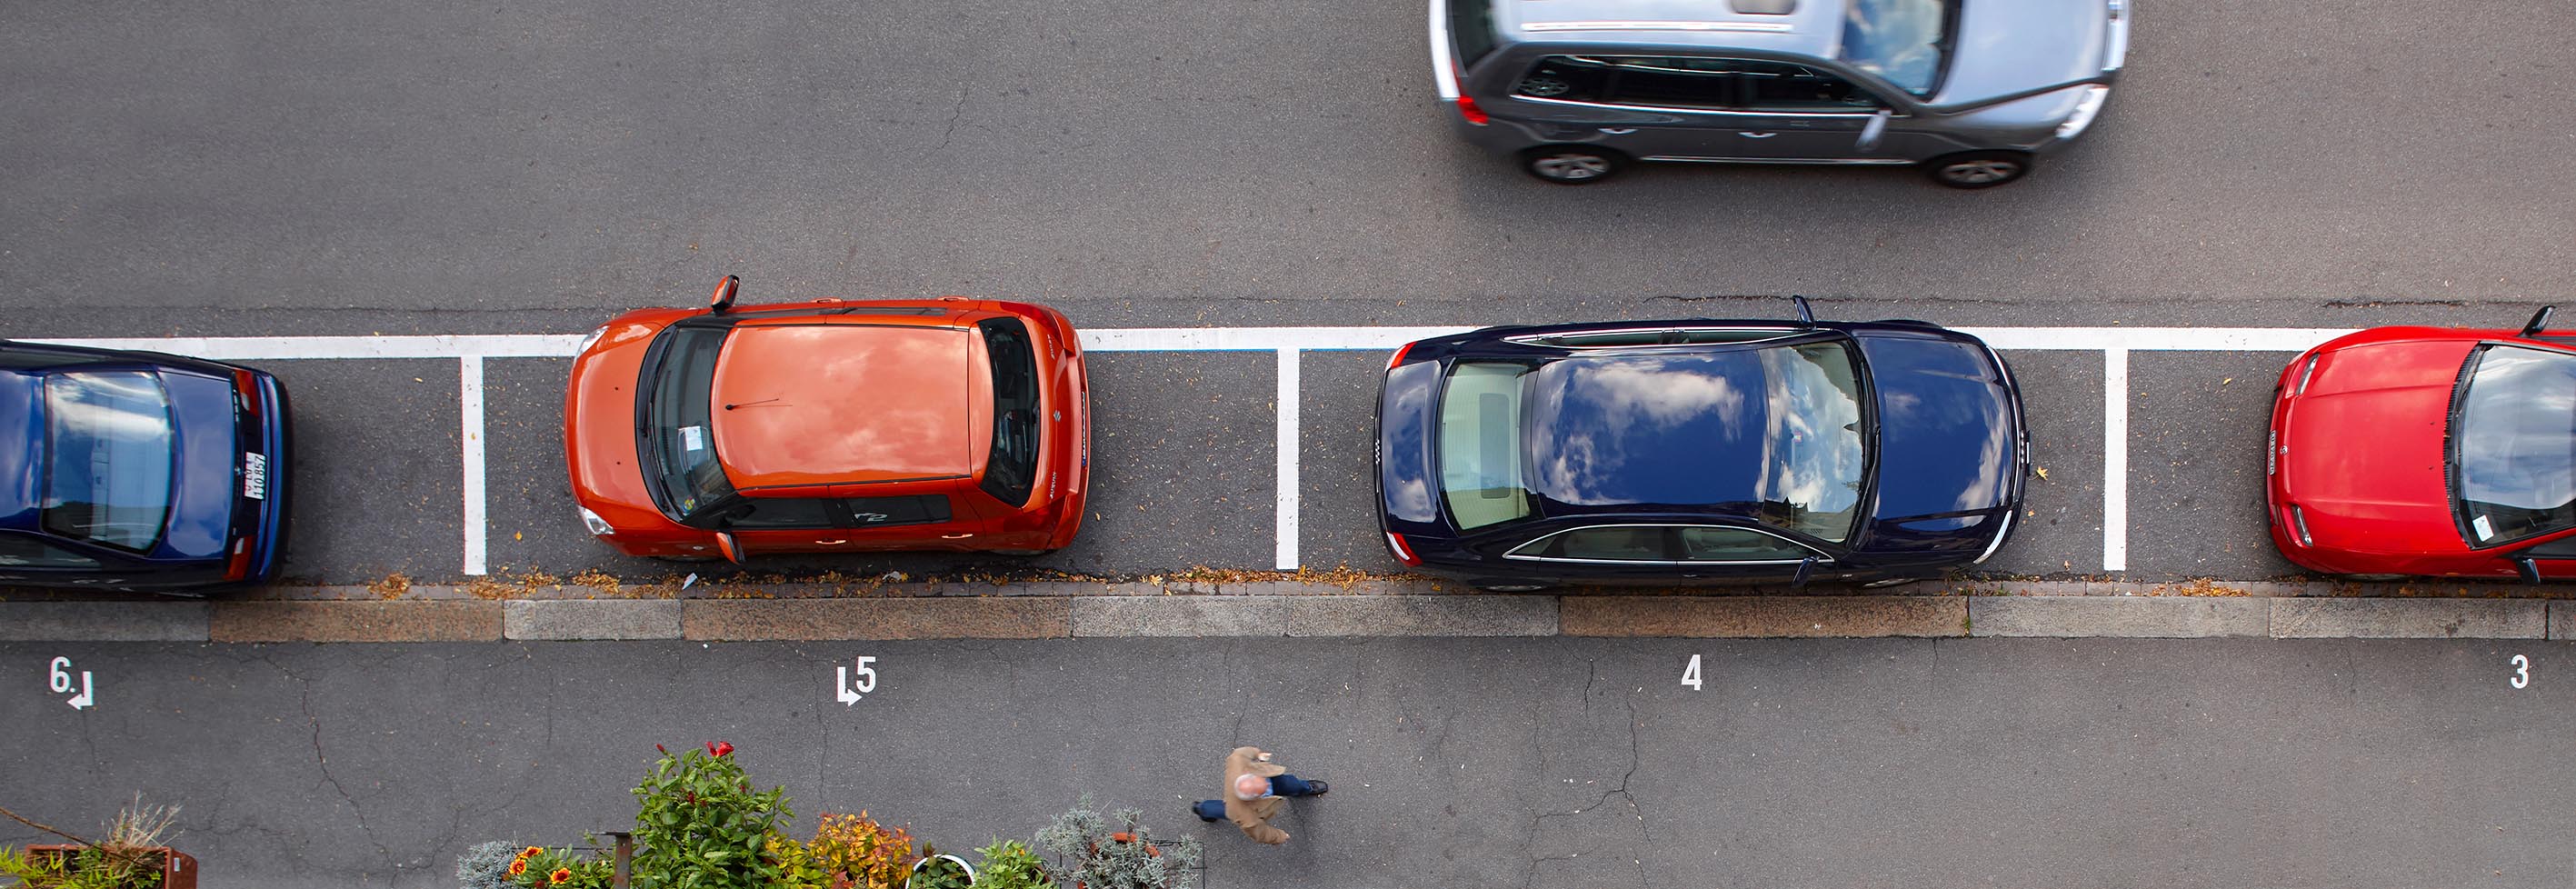 Auto & Öffentliche Parkplätze 